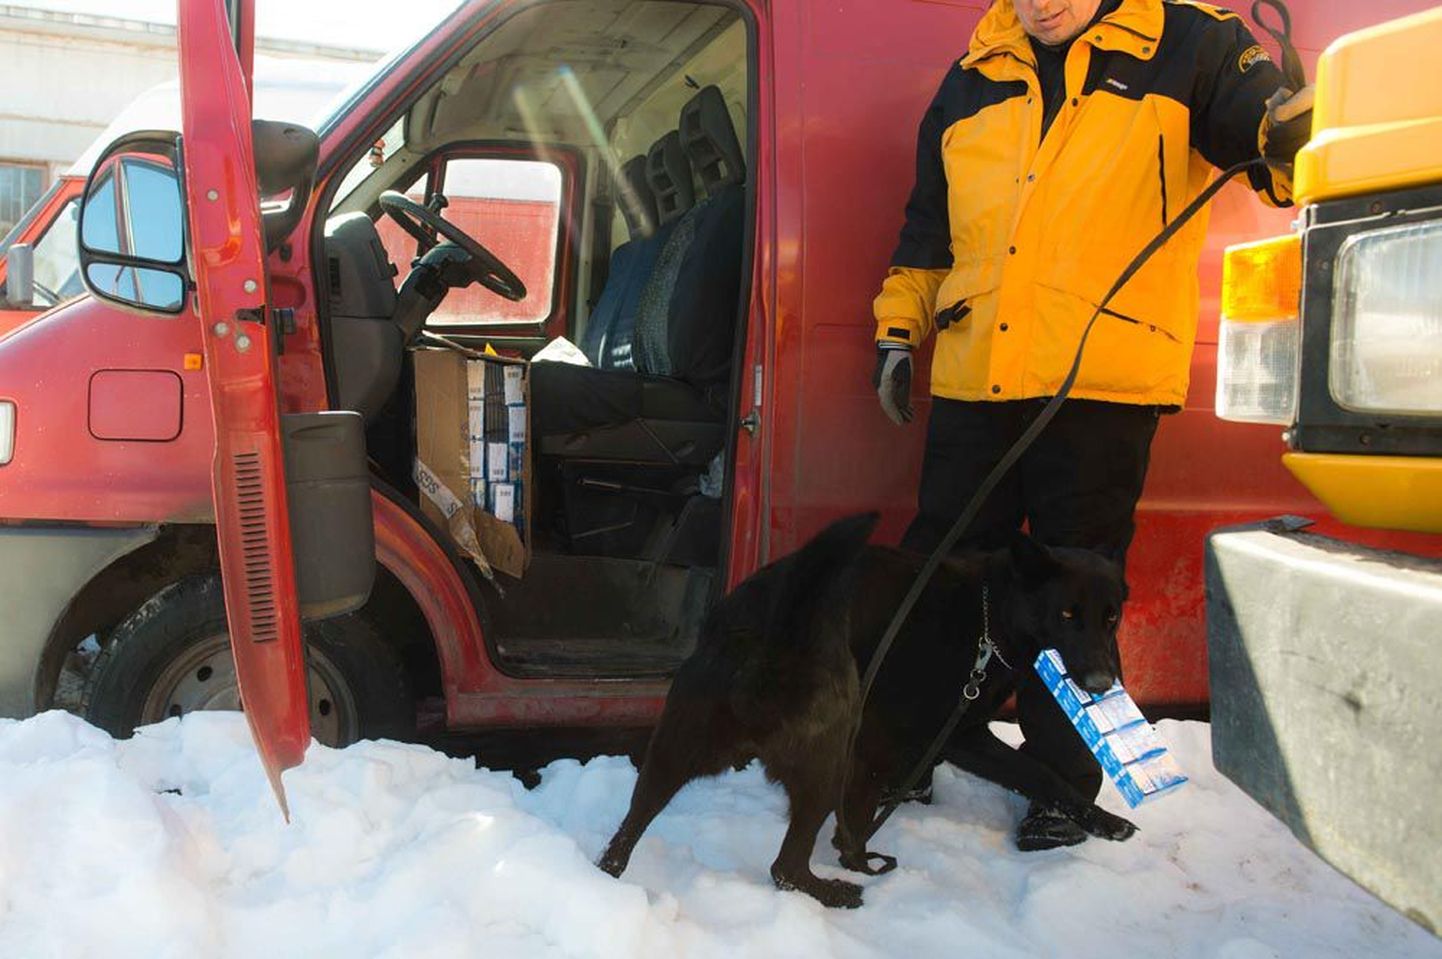 Tubakakoerte treening näeb välja nõnda, et koerajuht ja treener peidavad plokid eri kõrgusele sõiduki sisse ja selle välisosadesse ning koer peab need üles leidma